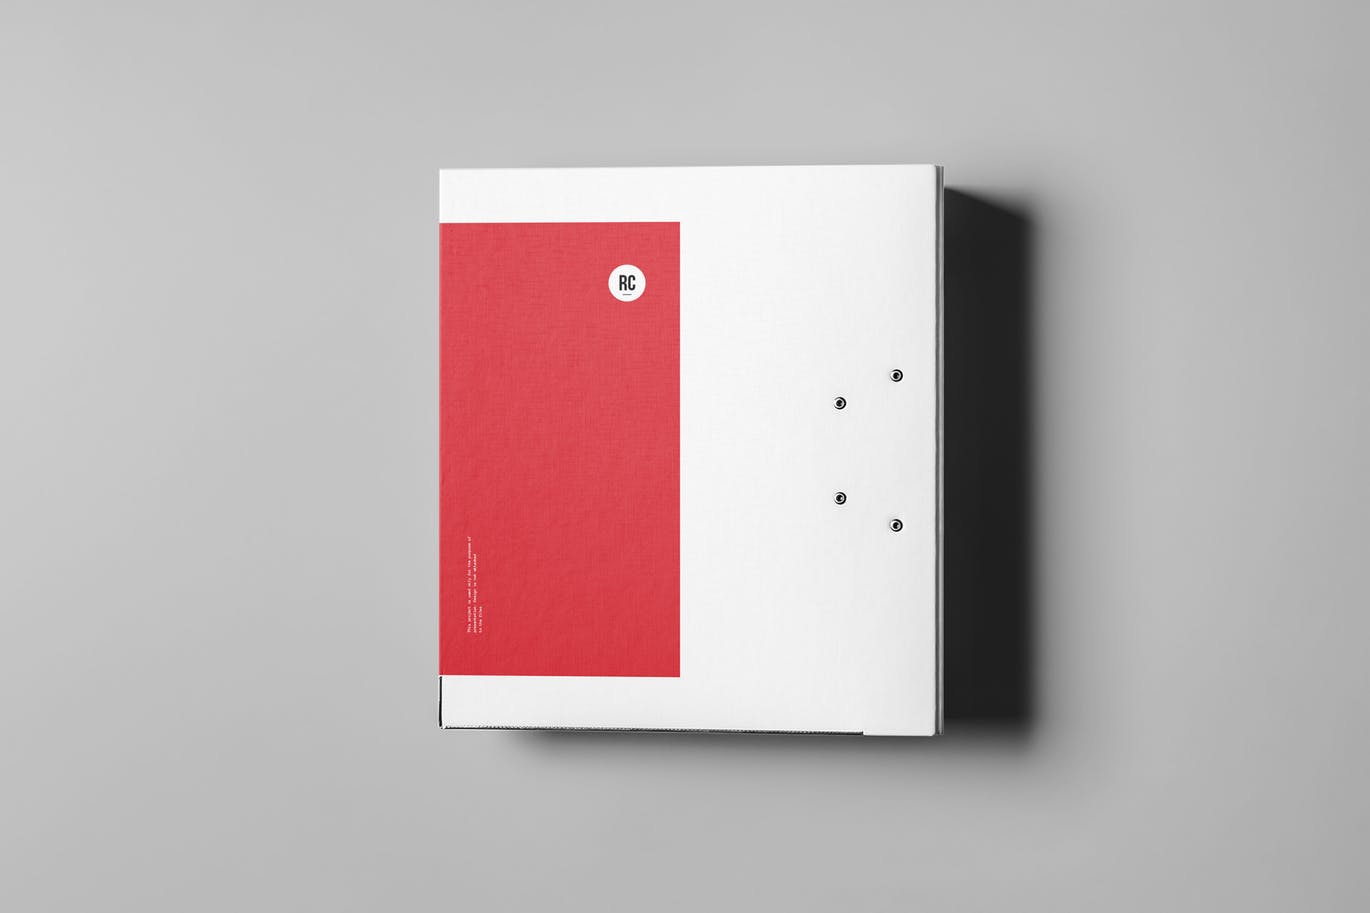 高品质的高端质感的文件夹binder-mock-up #30